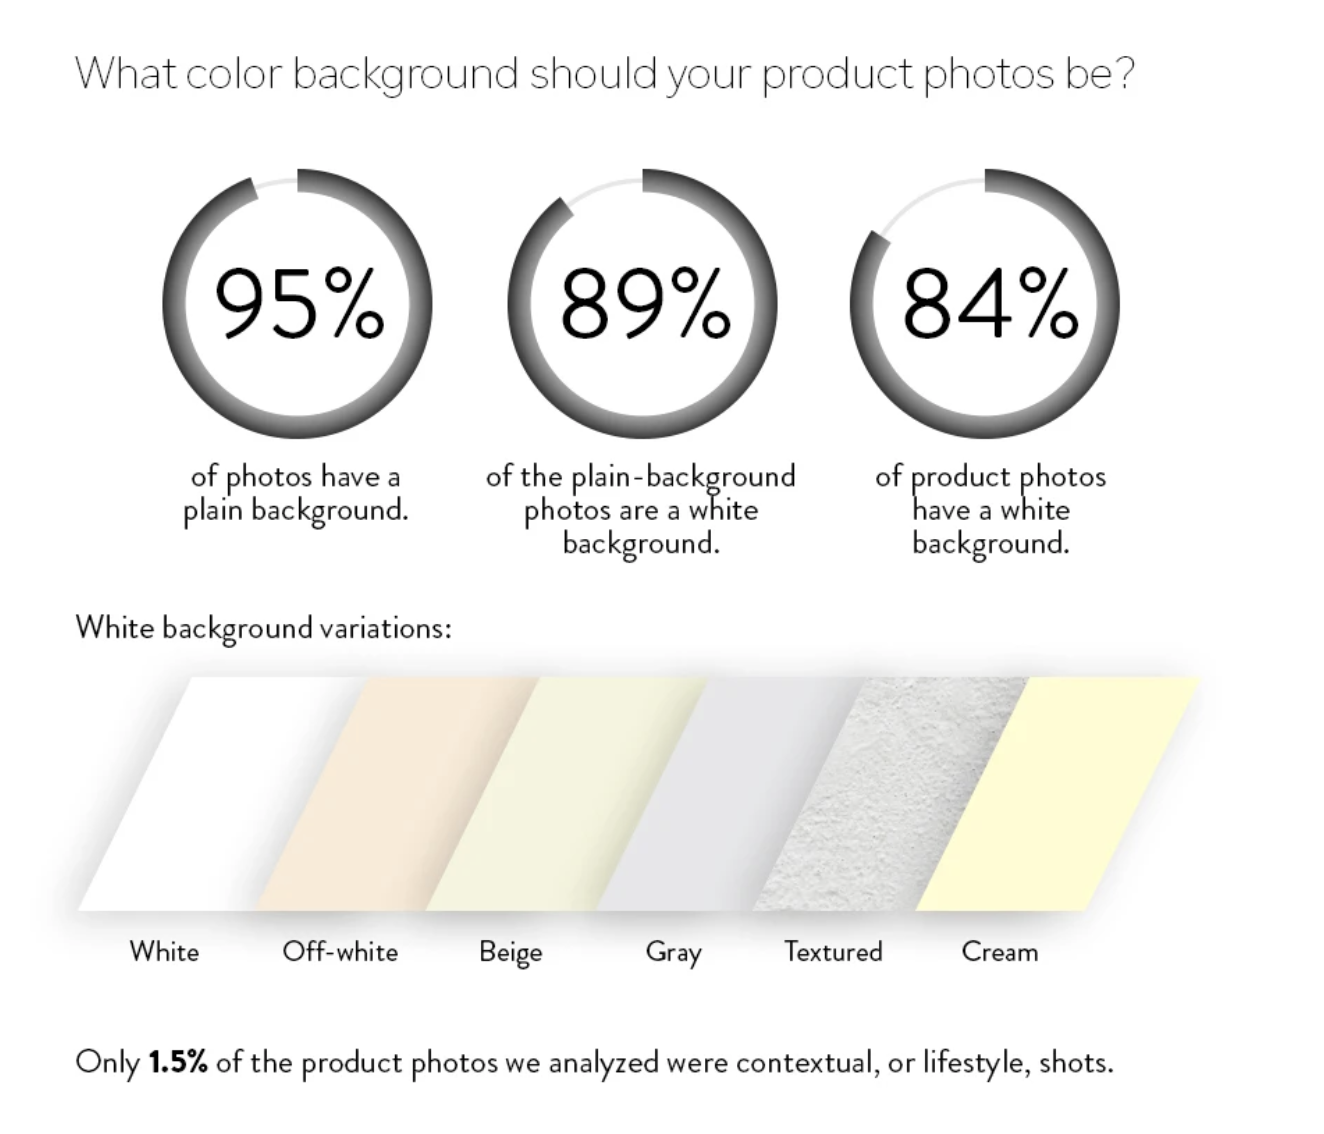 Màu nền sản phẩm - Tăng lợi thế cạnh tranh cho sản phẩm của bạn bằng cách chọn màu nền phù hợp. Hình ảnh sản phẩm giàu sắc thái sẽ thu hút khách hàng hơn và tăng độ chuyên nghiệp cho thương hiệu của bạn.